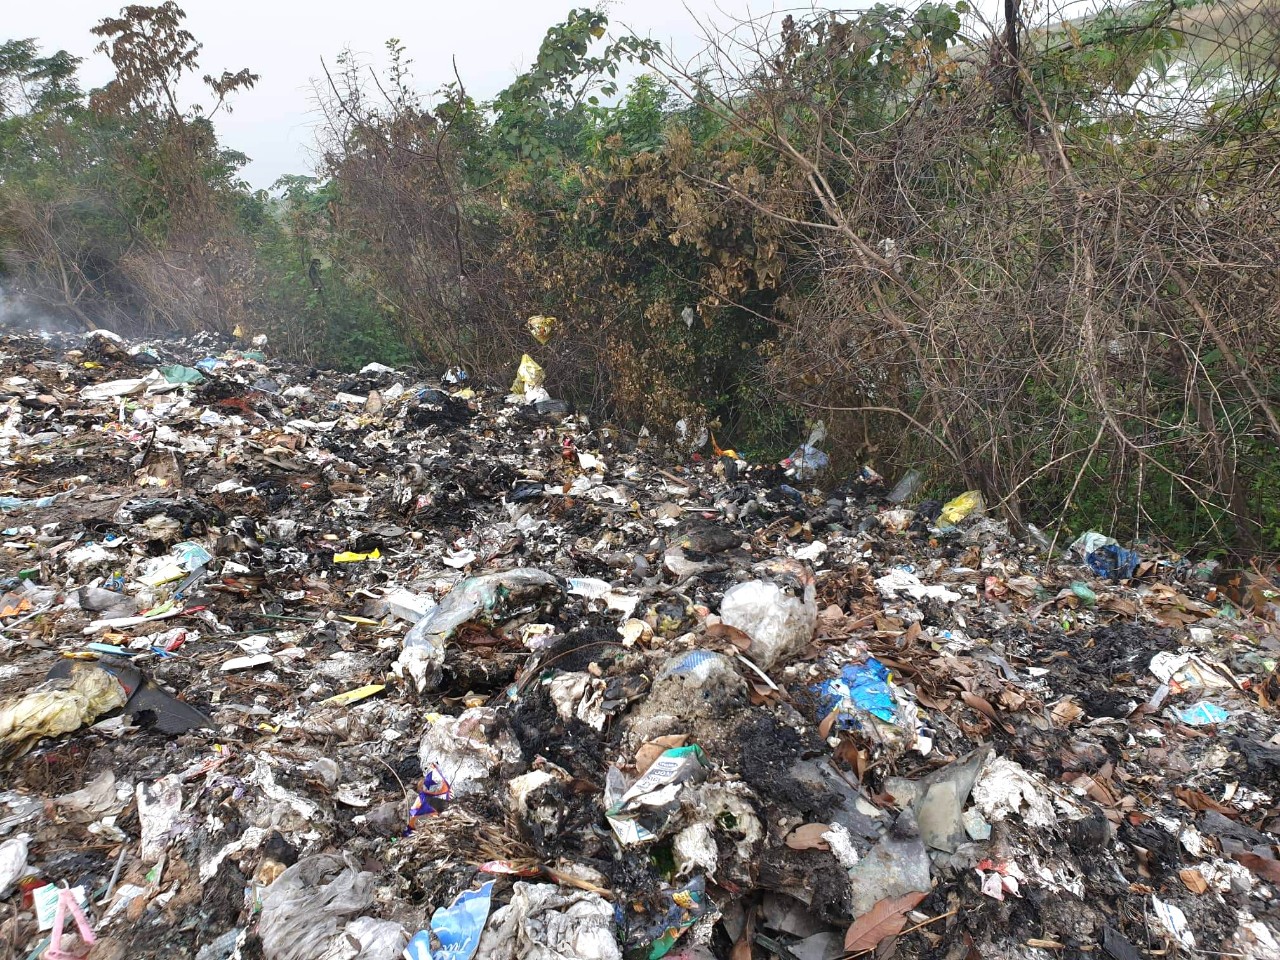 Rác thải nhựa: Vấn đề rác thải nhựa đang trở thành mối quan tâm hàng đầu của chúng ta. Những hình ảnh về việc tái chế rác thải, các sản phẩm bằng nhựa thân thiện với môi trường hoặc những hình ảnh về tình cảnh của những con động vật bị tổn hại bởi rác thải nhựa sẽ giúp chúng ta có cái nhìn khách quan hơn về vấn đề này và cùng nhau tìm cách giải quyết.